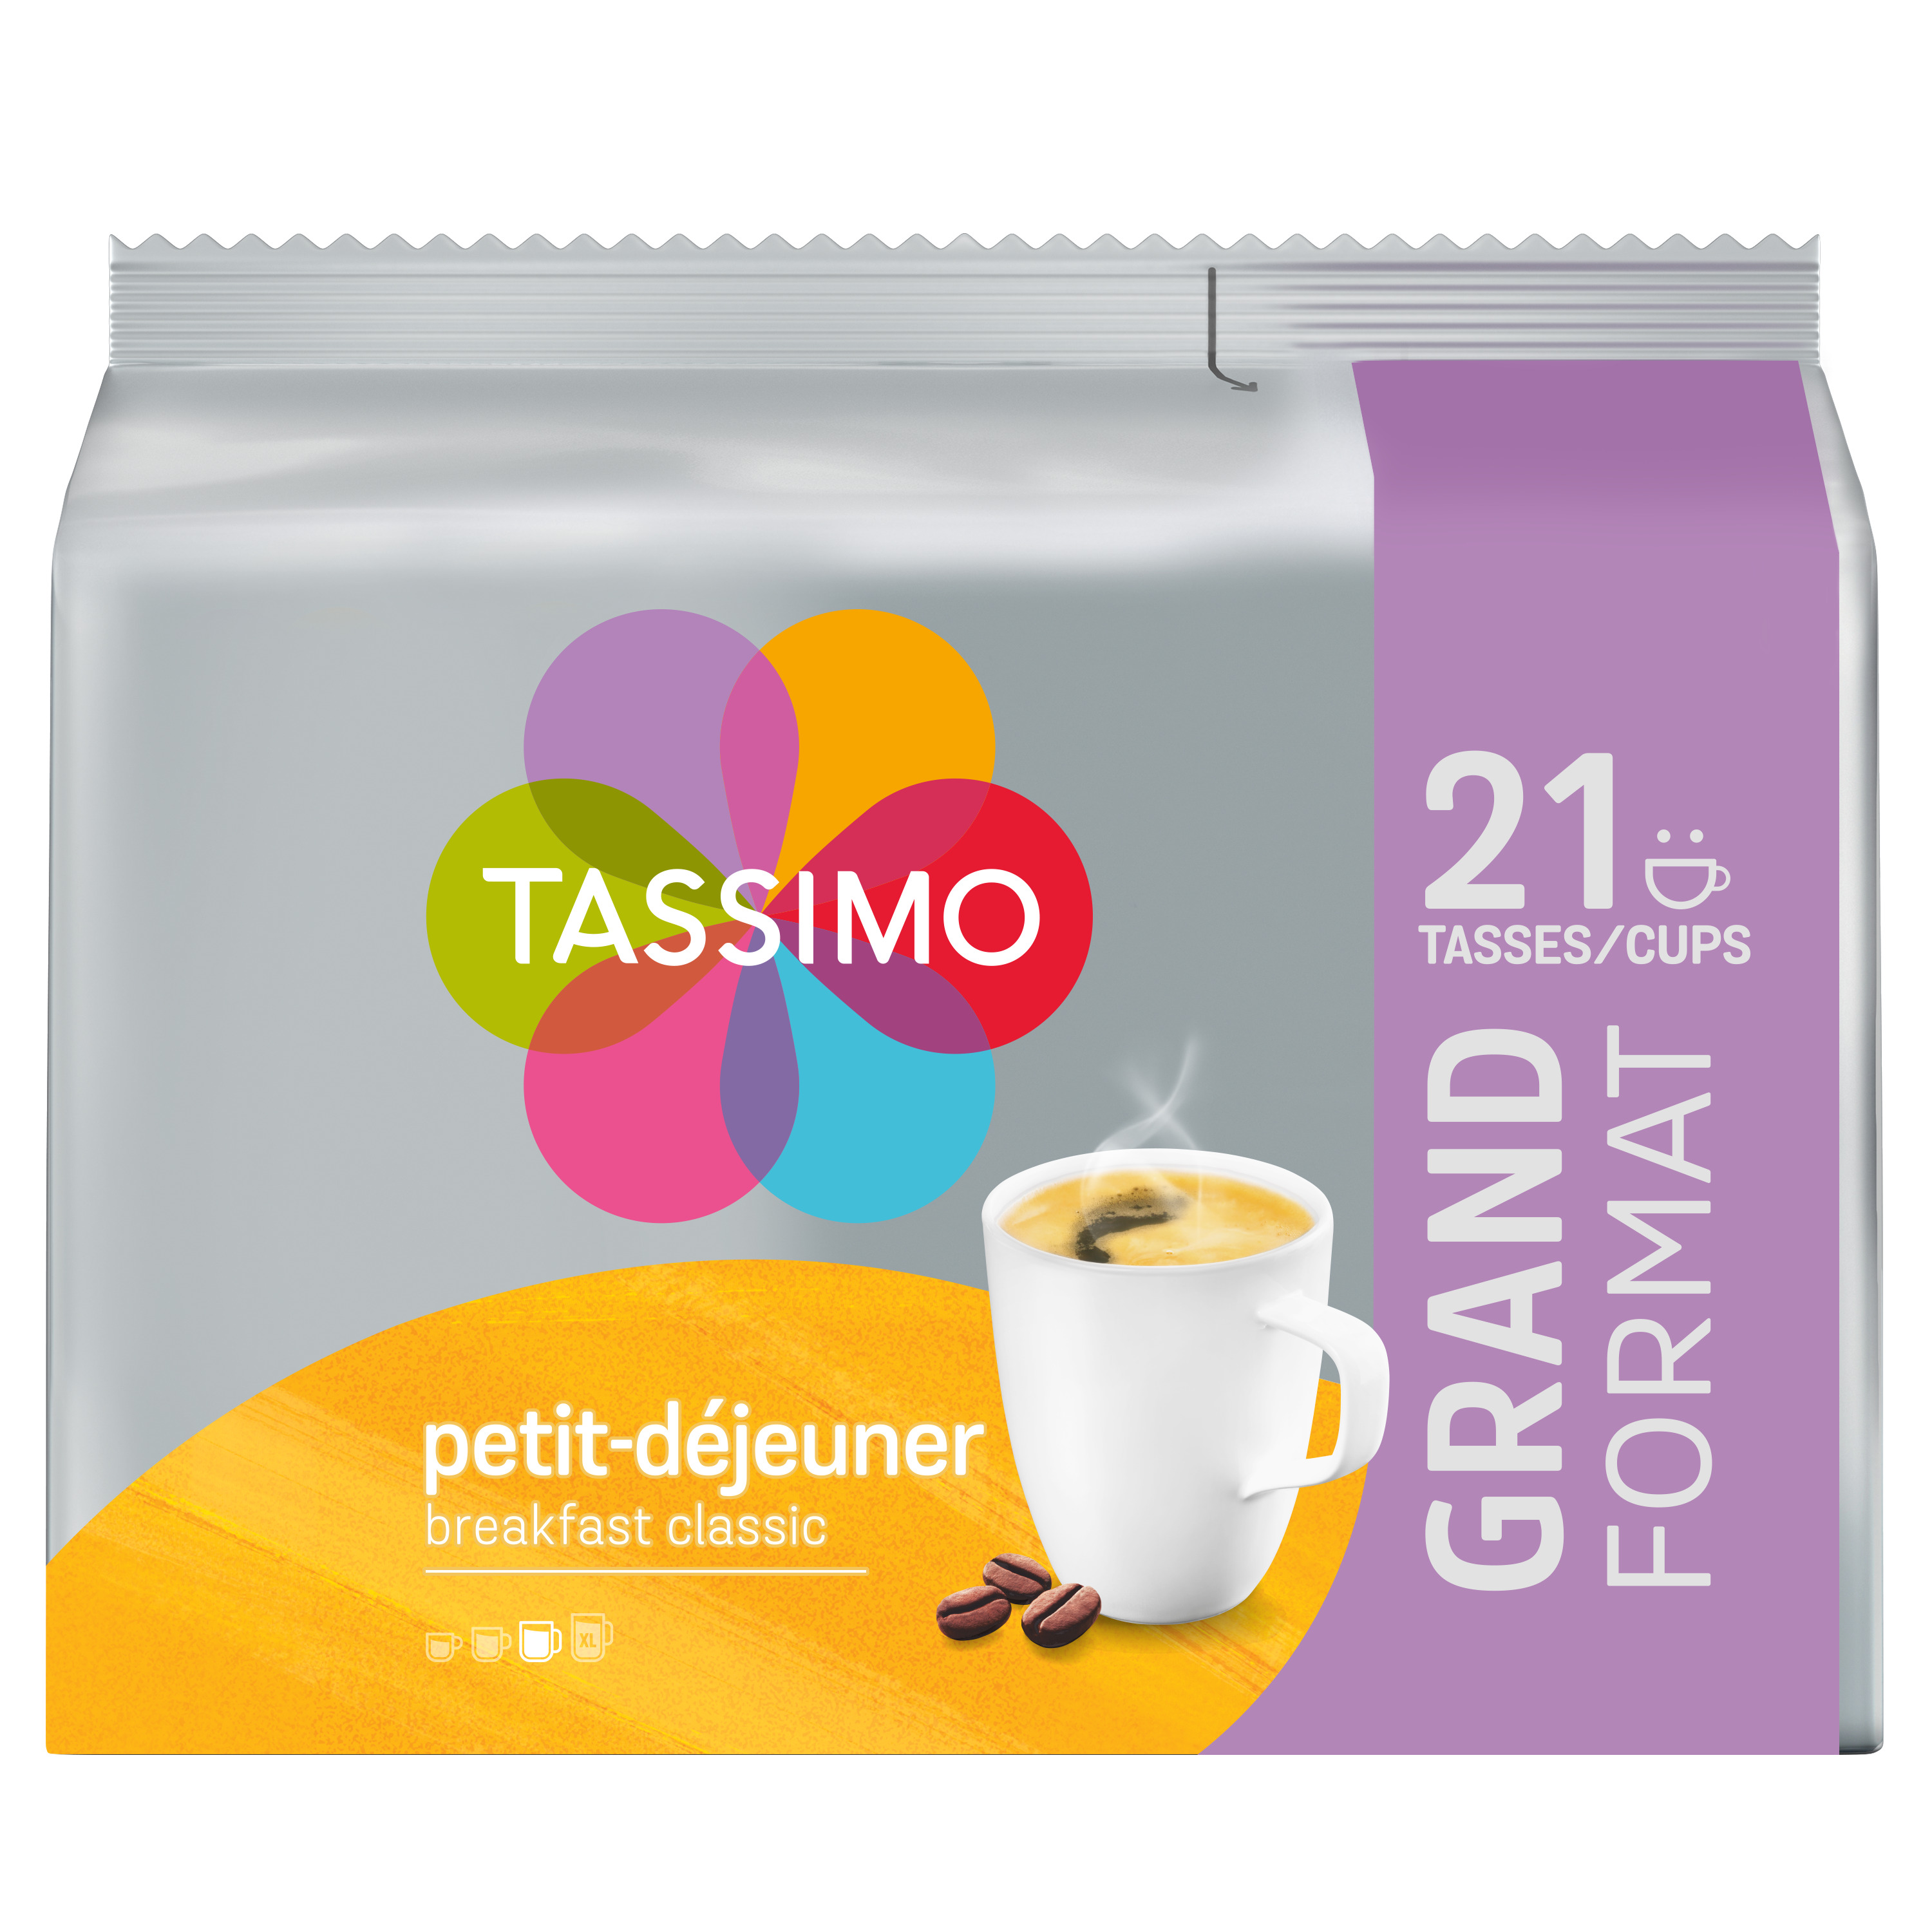 TASSIMO Tassimo carte noire café long délicat capsule 2x16 -221g pas cher 